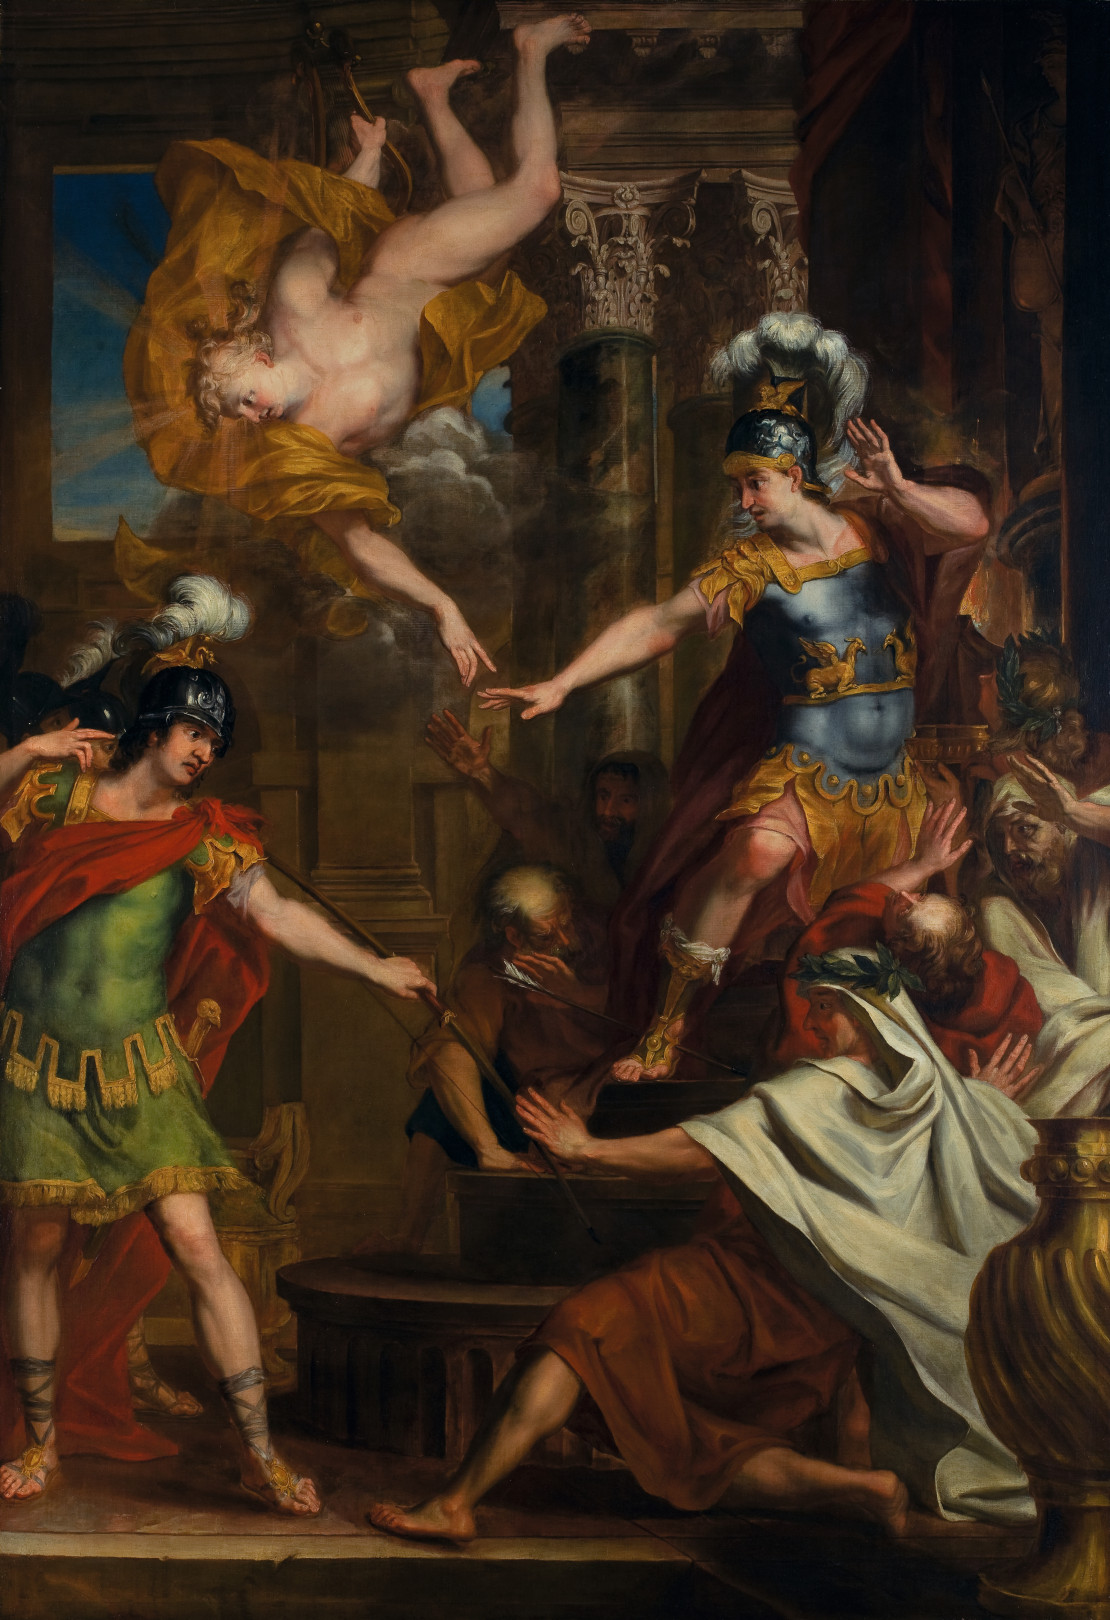 『パリスとアポロがアキレスの踵に矢を向け命を狙う』 エラルート・デ・ライレッセ (1640-1711)、ベルギー、油絵・キャンバス、 H 3000mm x W 2140mm